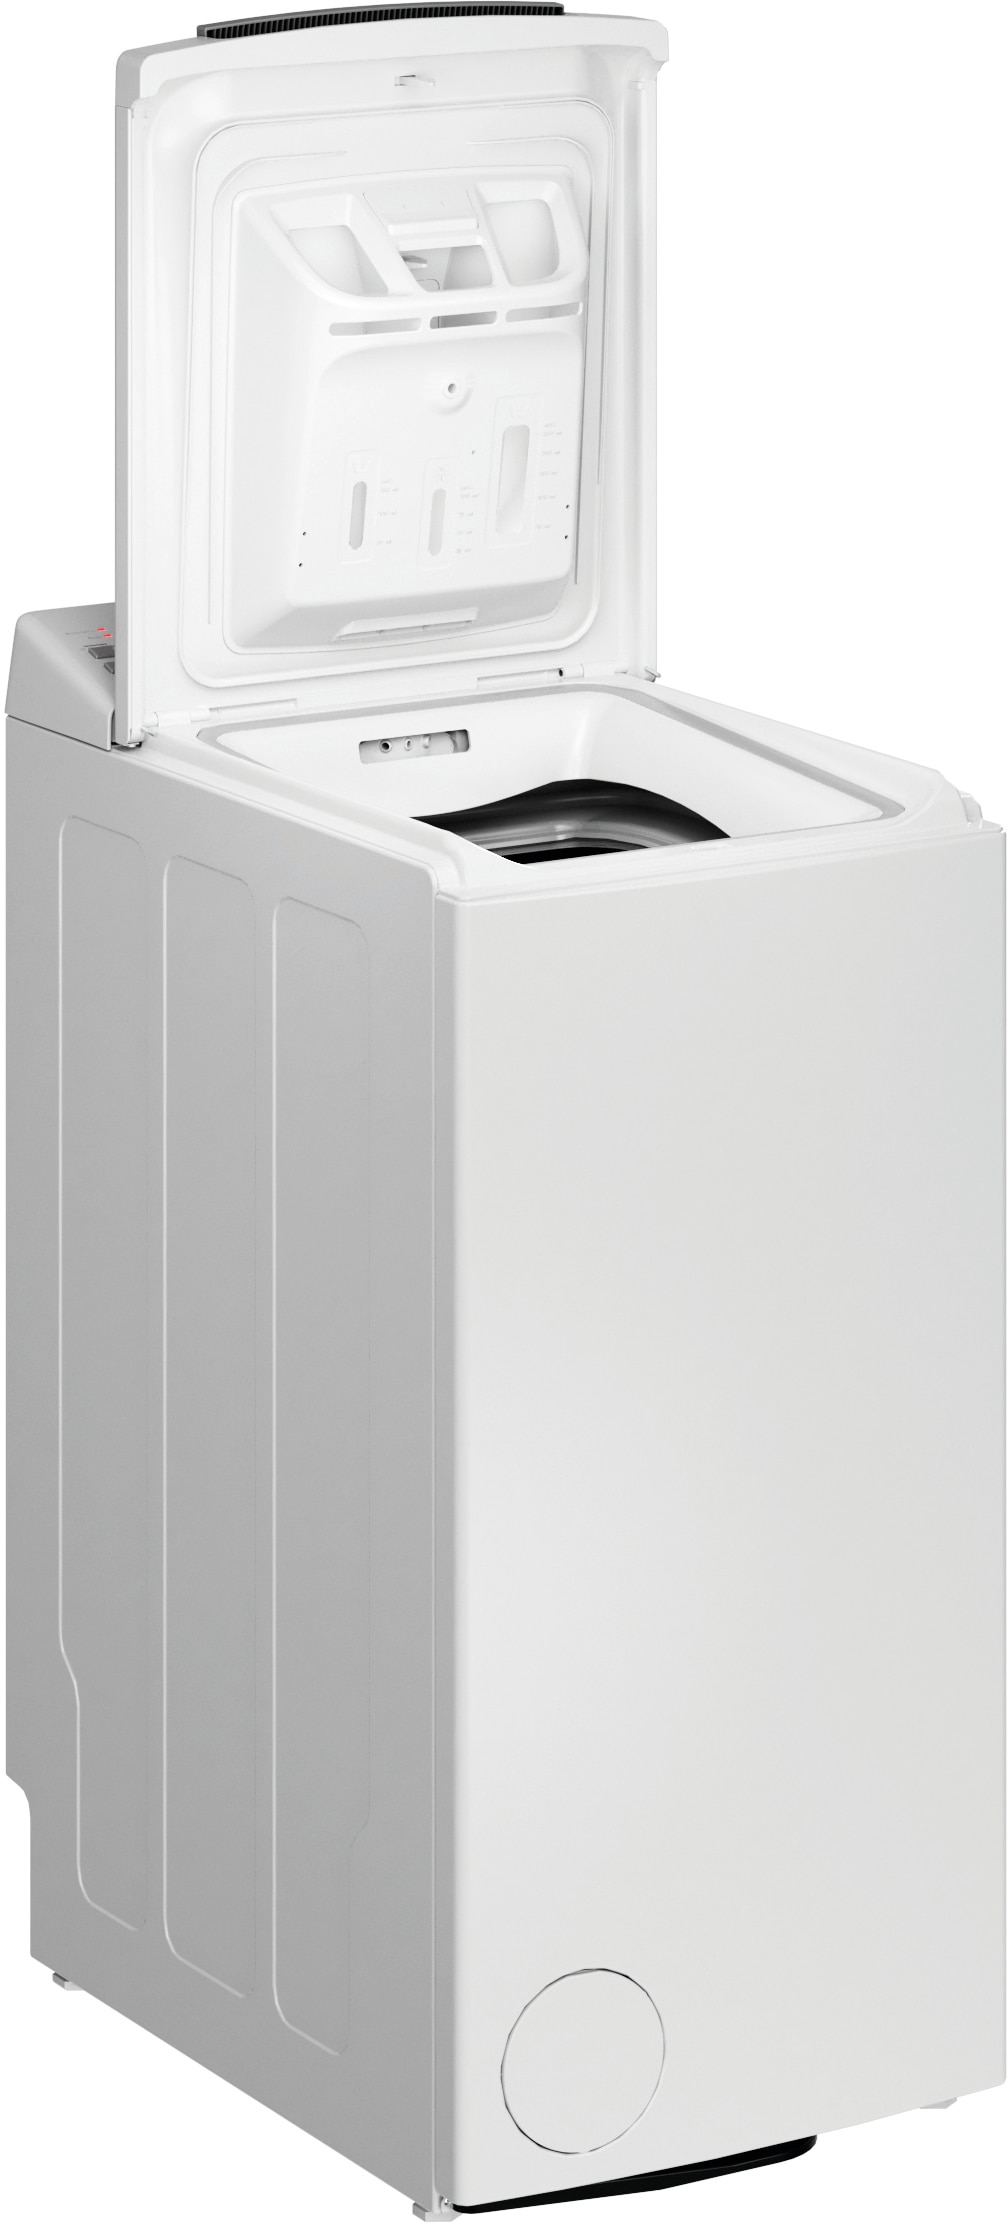 BAUKNECHT Waschmaschine Toplader WMT bestellen C«, Shield kg, 6523 6523 Online-Shop U/min 6,5 Shield »WMT C, Eco 1200 im Eco